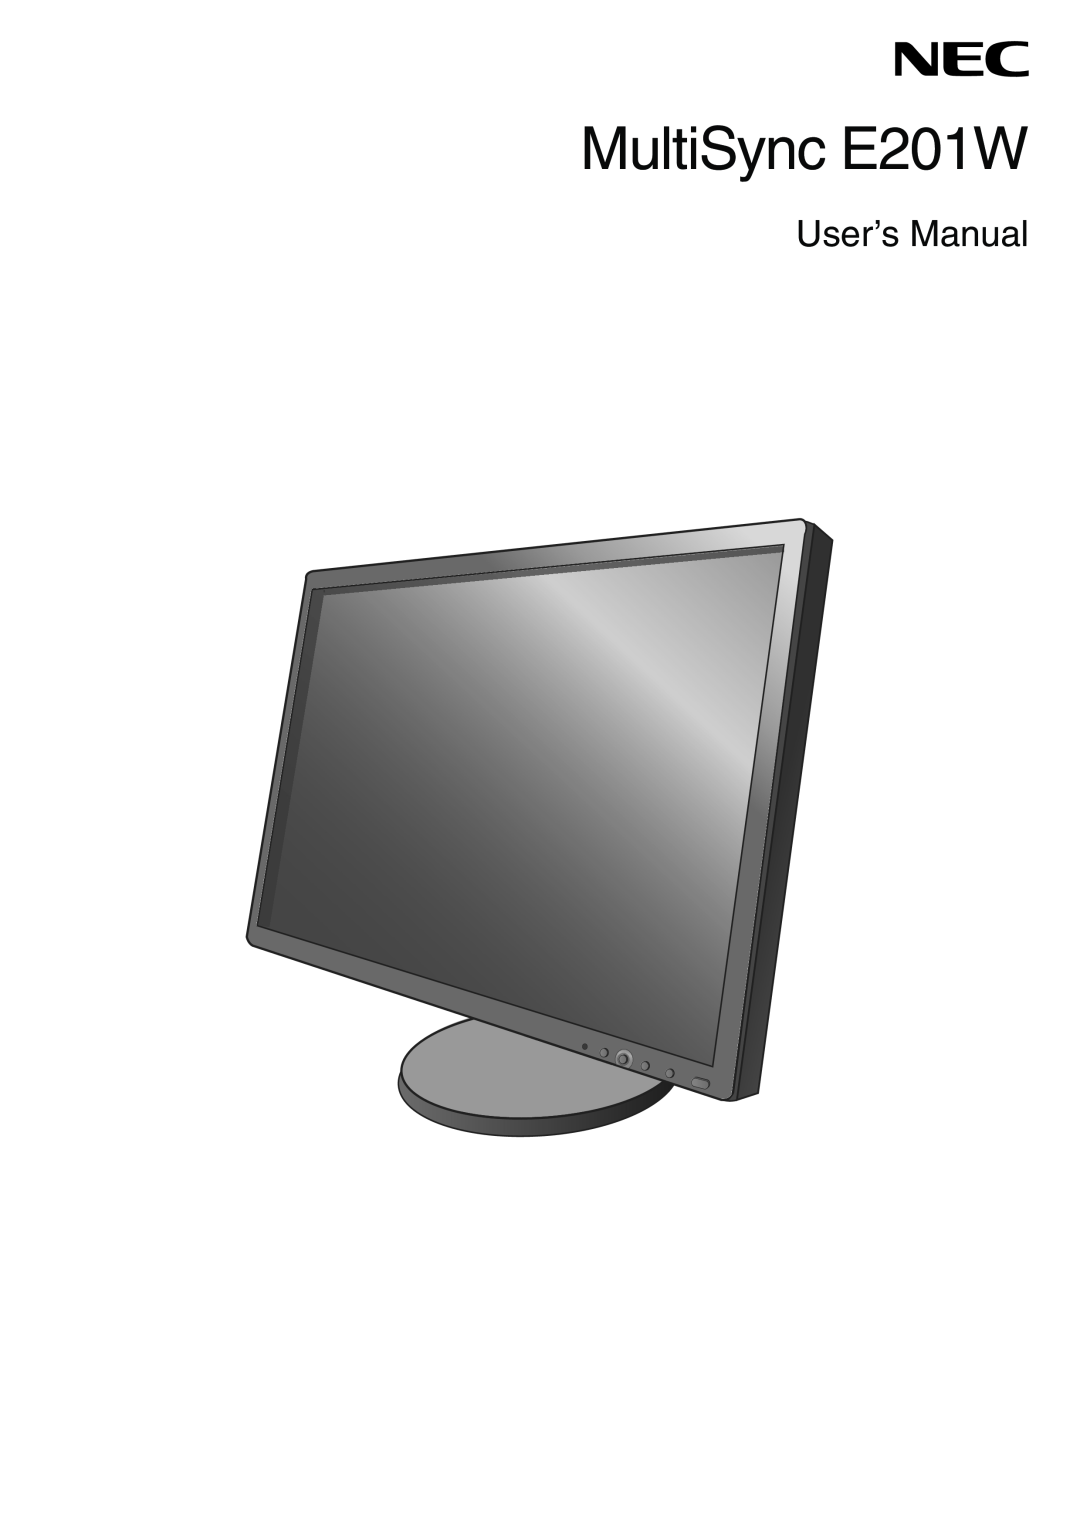 NEC user manual MultiSync E201W, User’s Manual 